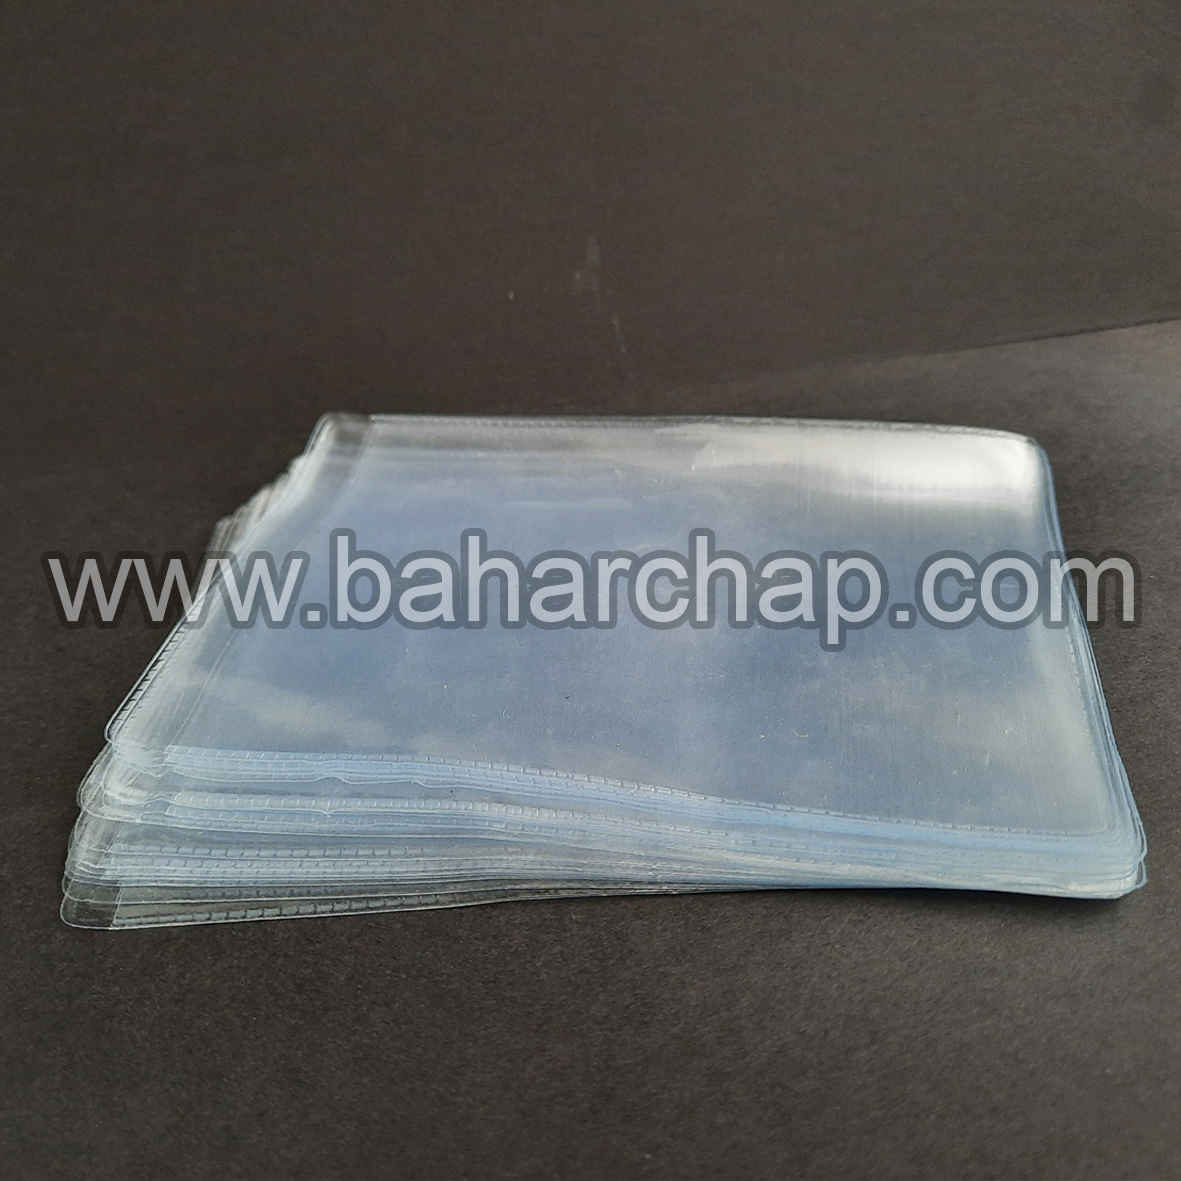 فروشگاه و خدمات اینترنتی بهارچاپ اصفهان-کاور کارت PVC سایز 12*8-pvc cards cover sheet 80*120